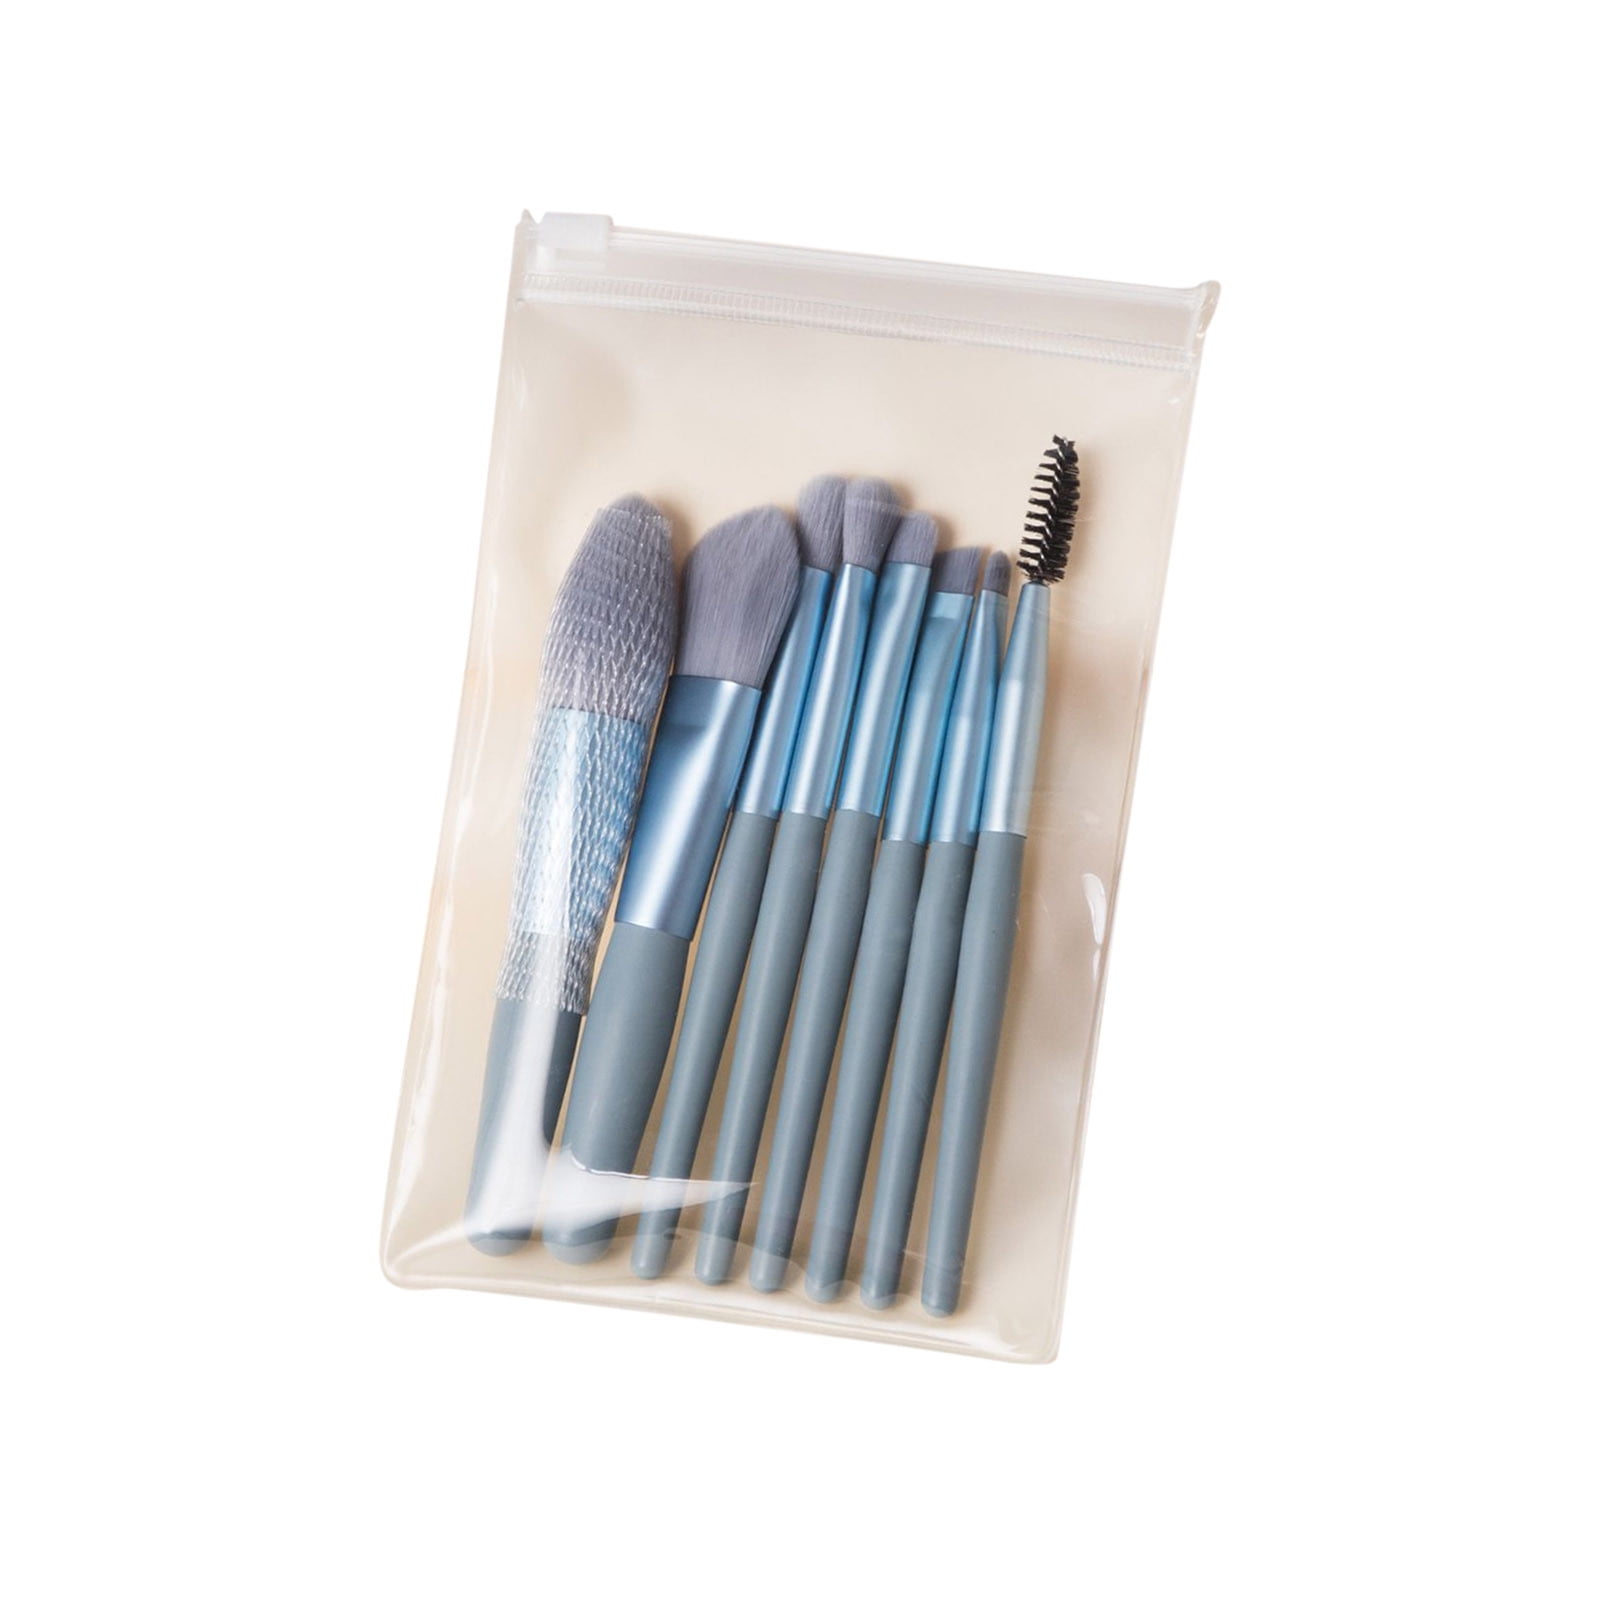 Mini Makeup Brush Set - 6 Pcs - Imitation Wool Brushes from Apollo Box